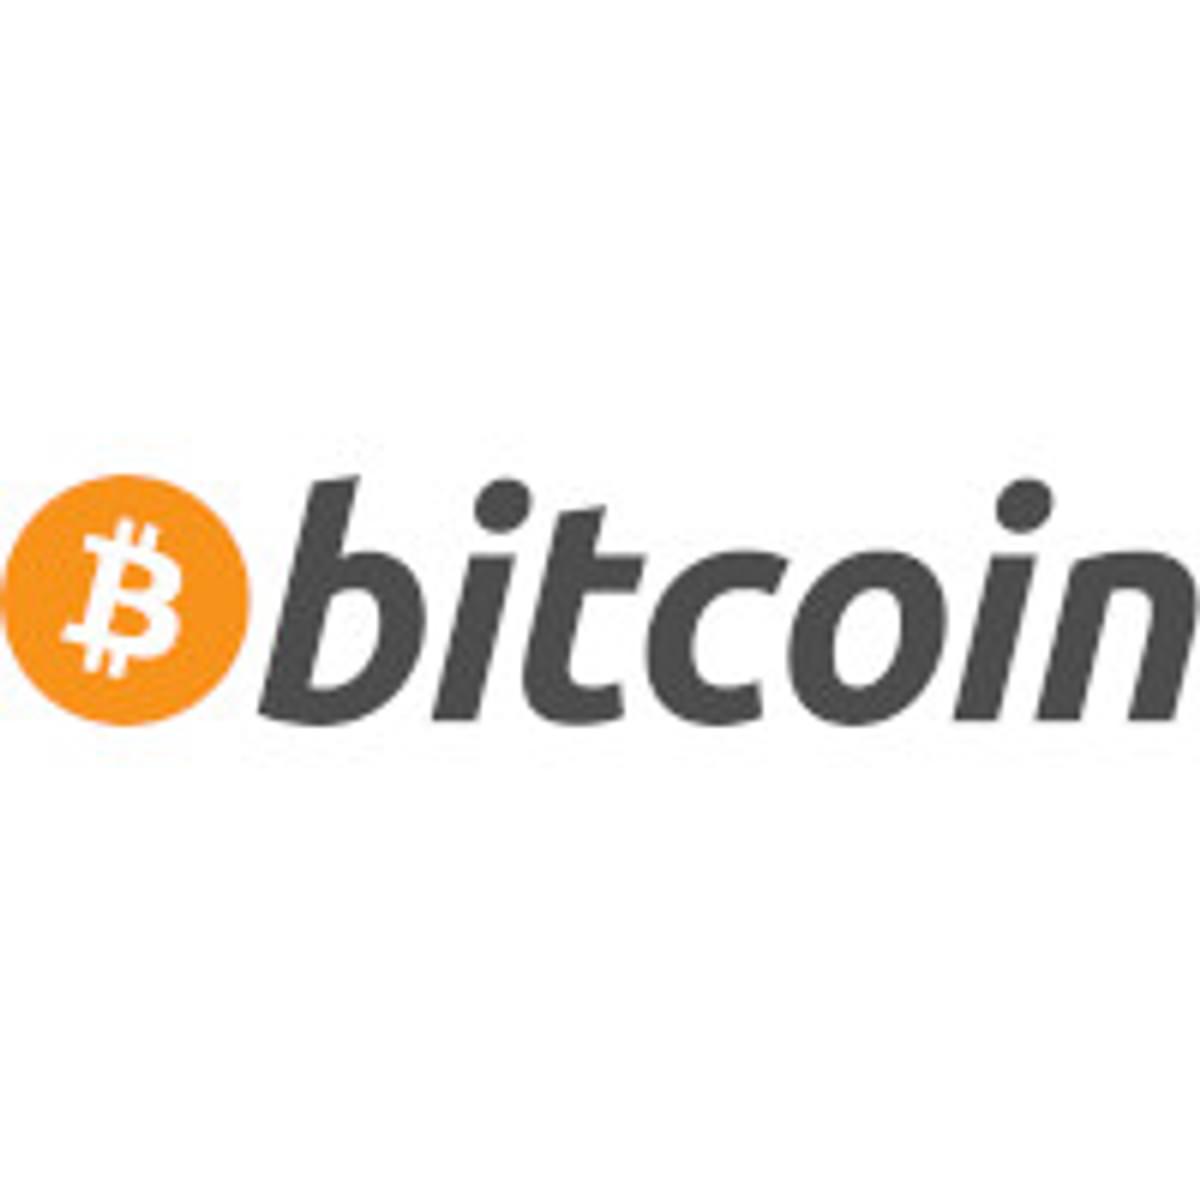 Club Brugge krijgt sponsordeal betaald in bitcoin image